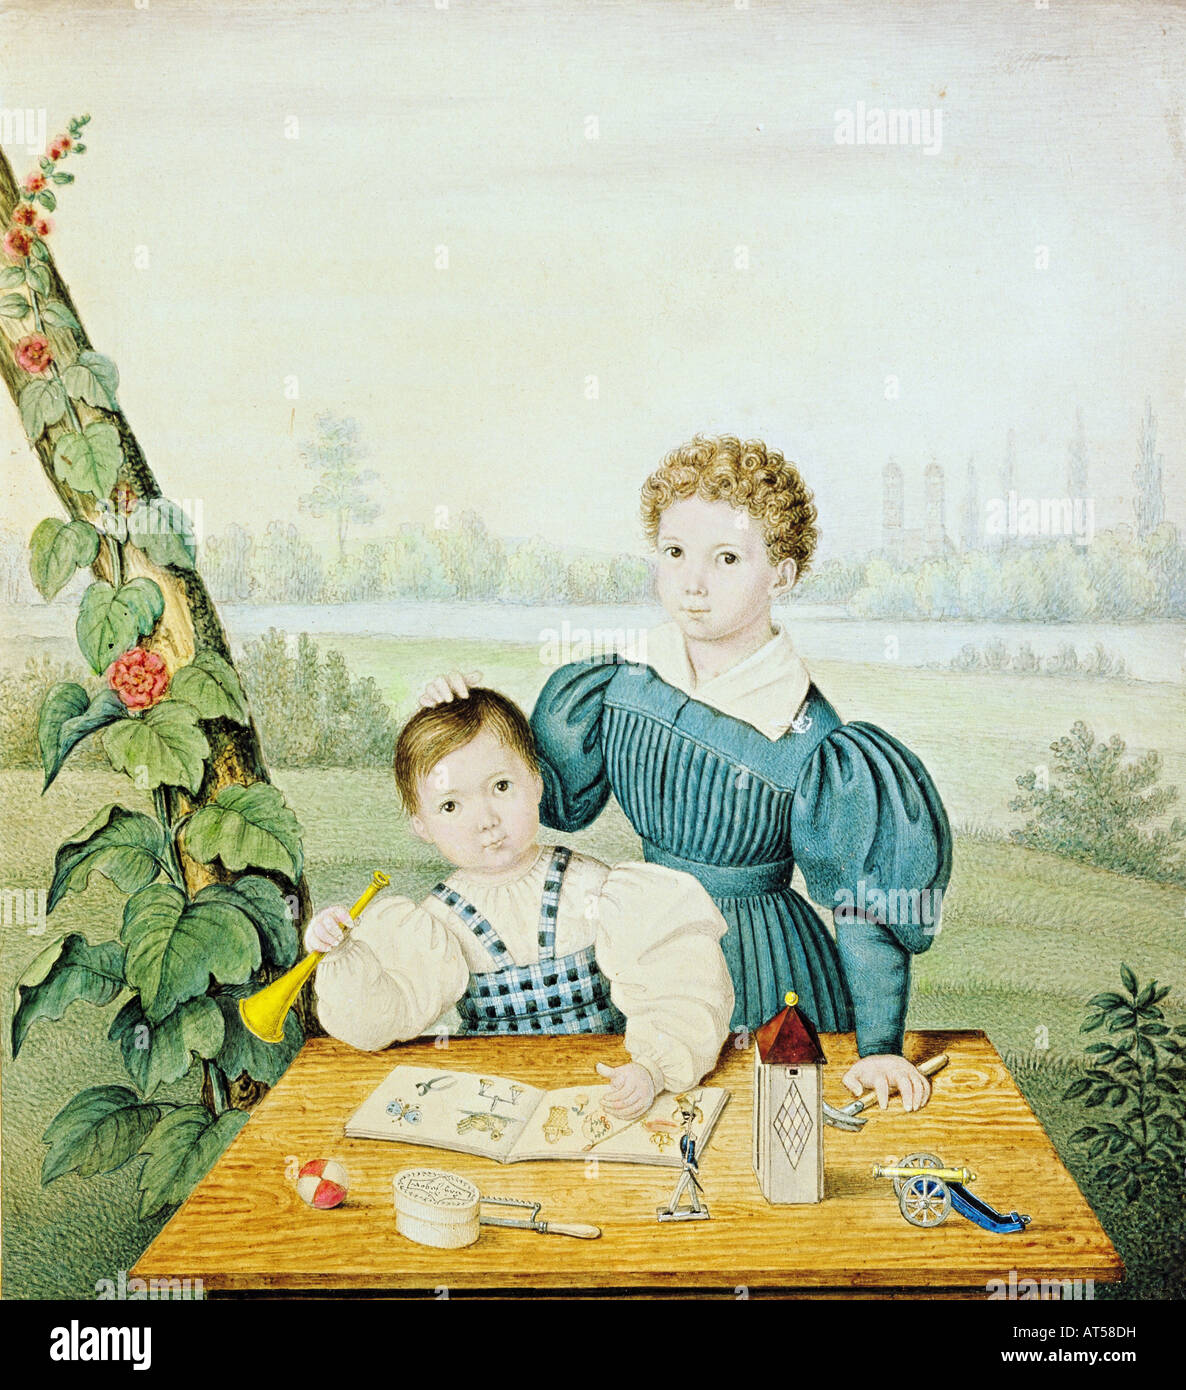 Bellas artes, realismo, pintura, dos niños jugando en una mesa, artista desconocido, circa 1835, acuarela sobre lápiz, Stadtmuseum, Munich, , Copyright del artista no ha de ser borrado Foto de stock